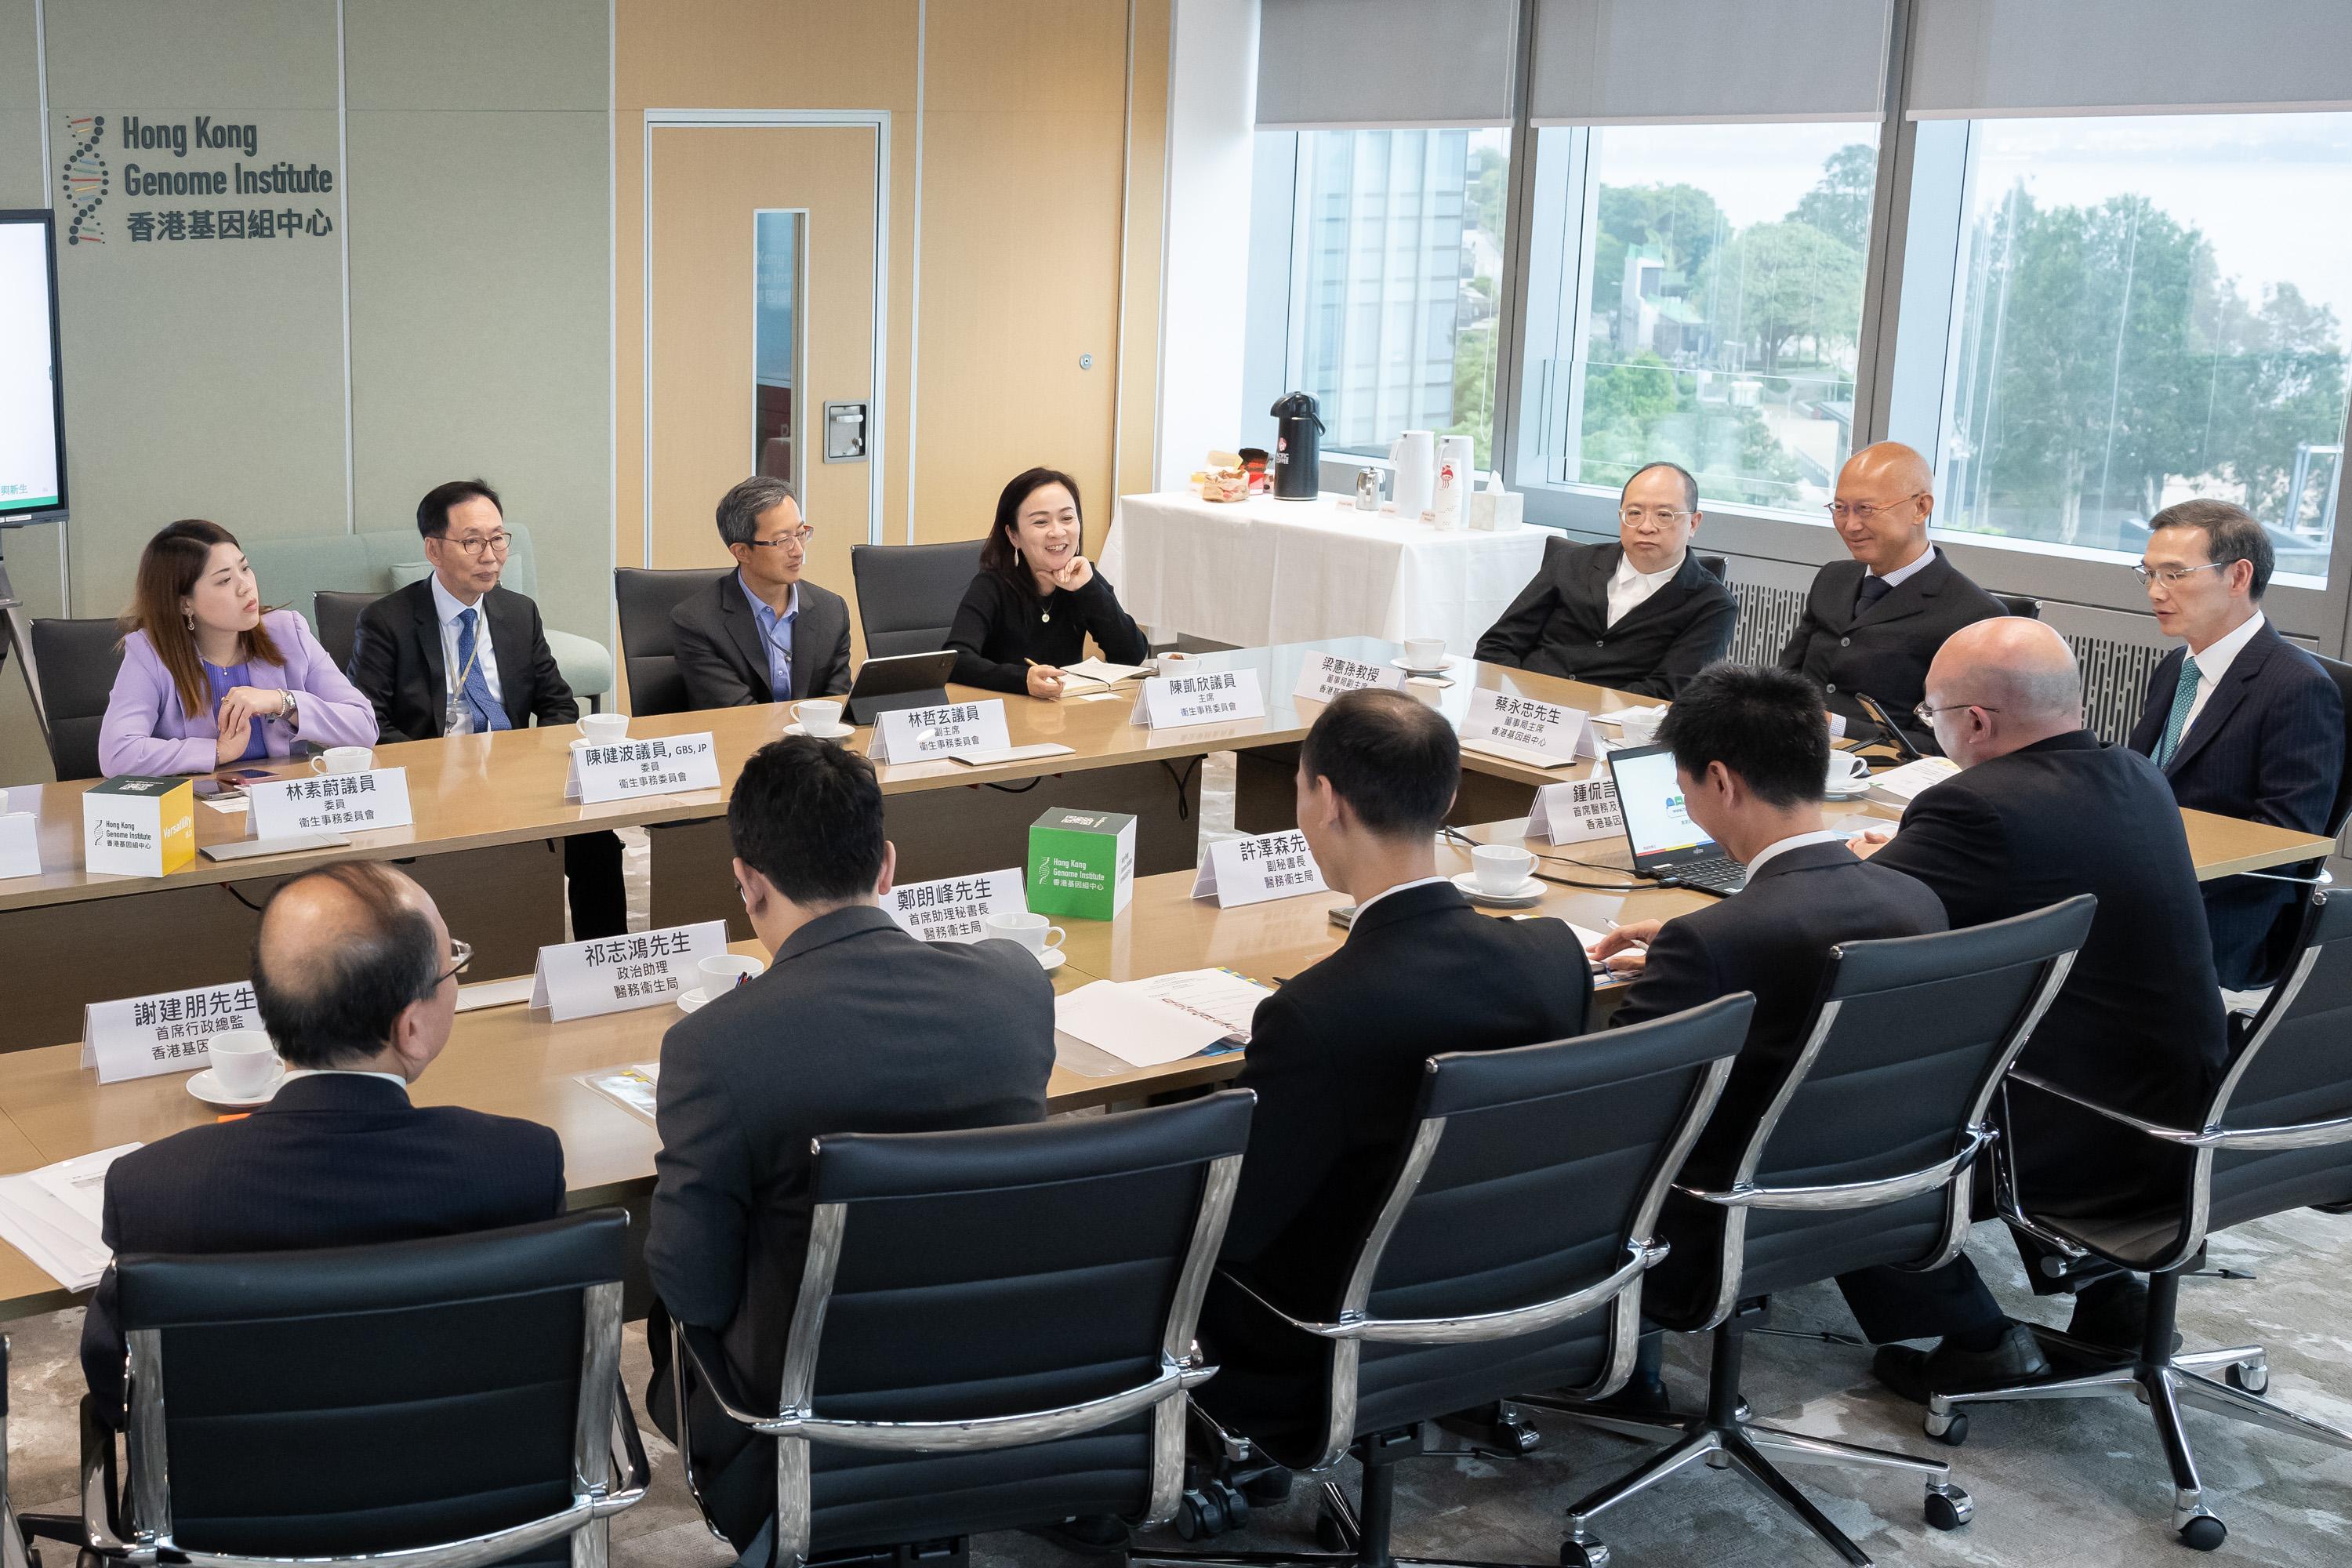 立法會議員聽取中心的管理團隊介紹香港基因組計劃。